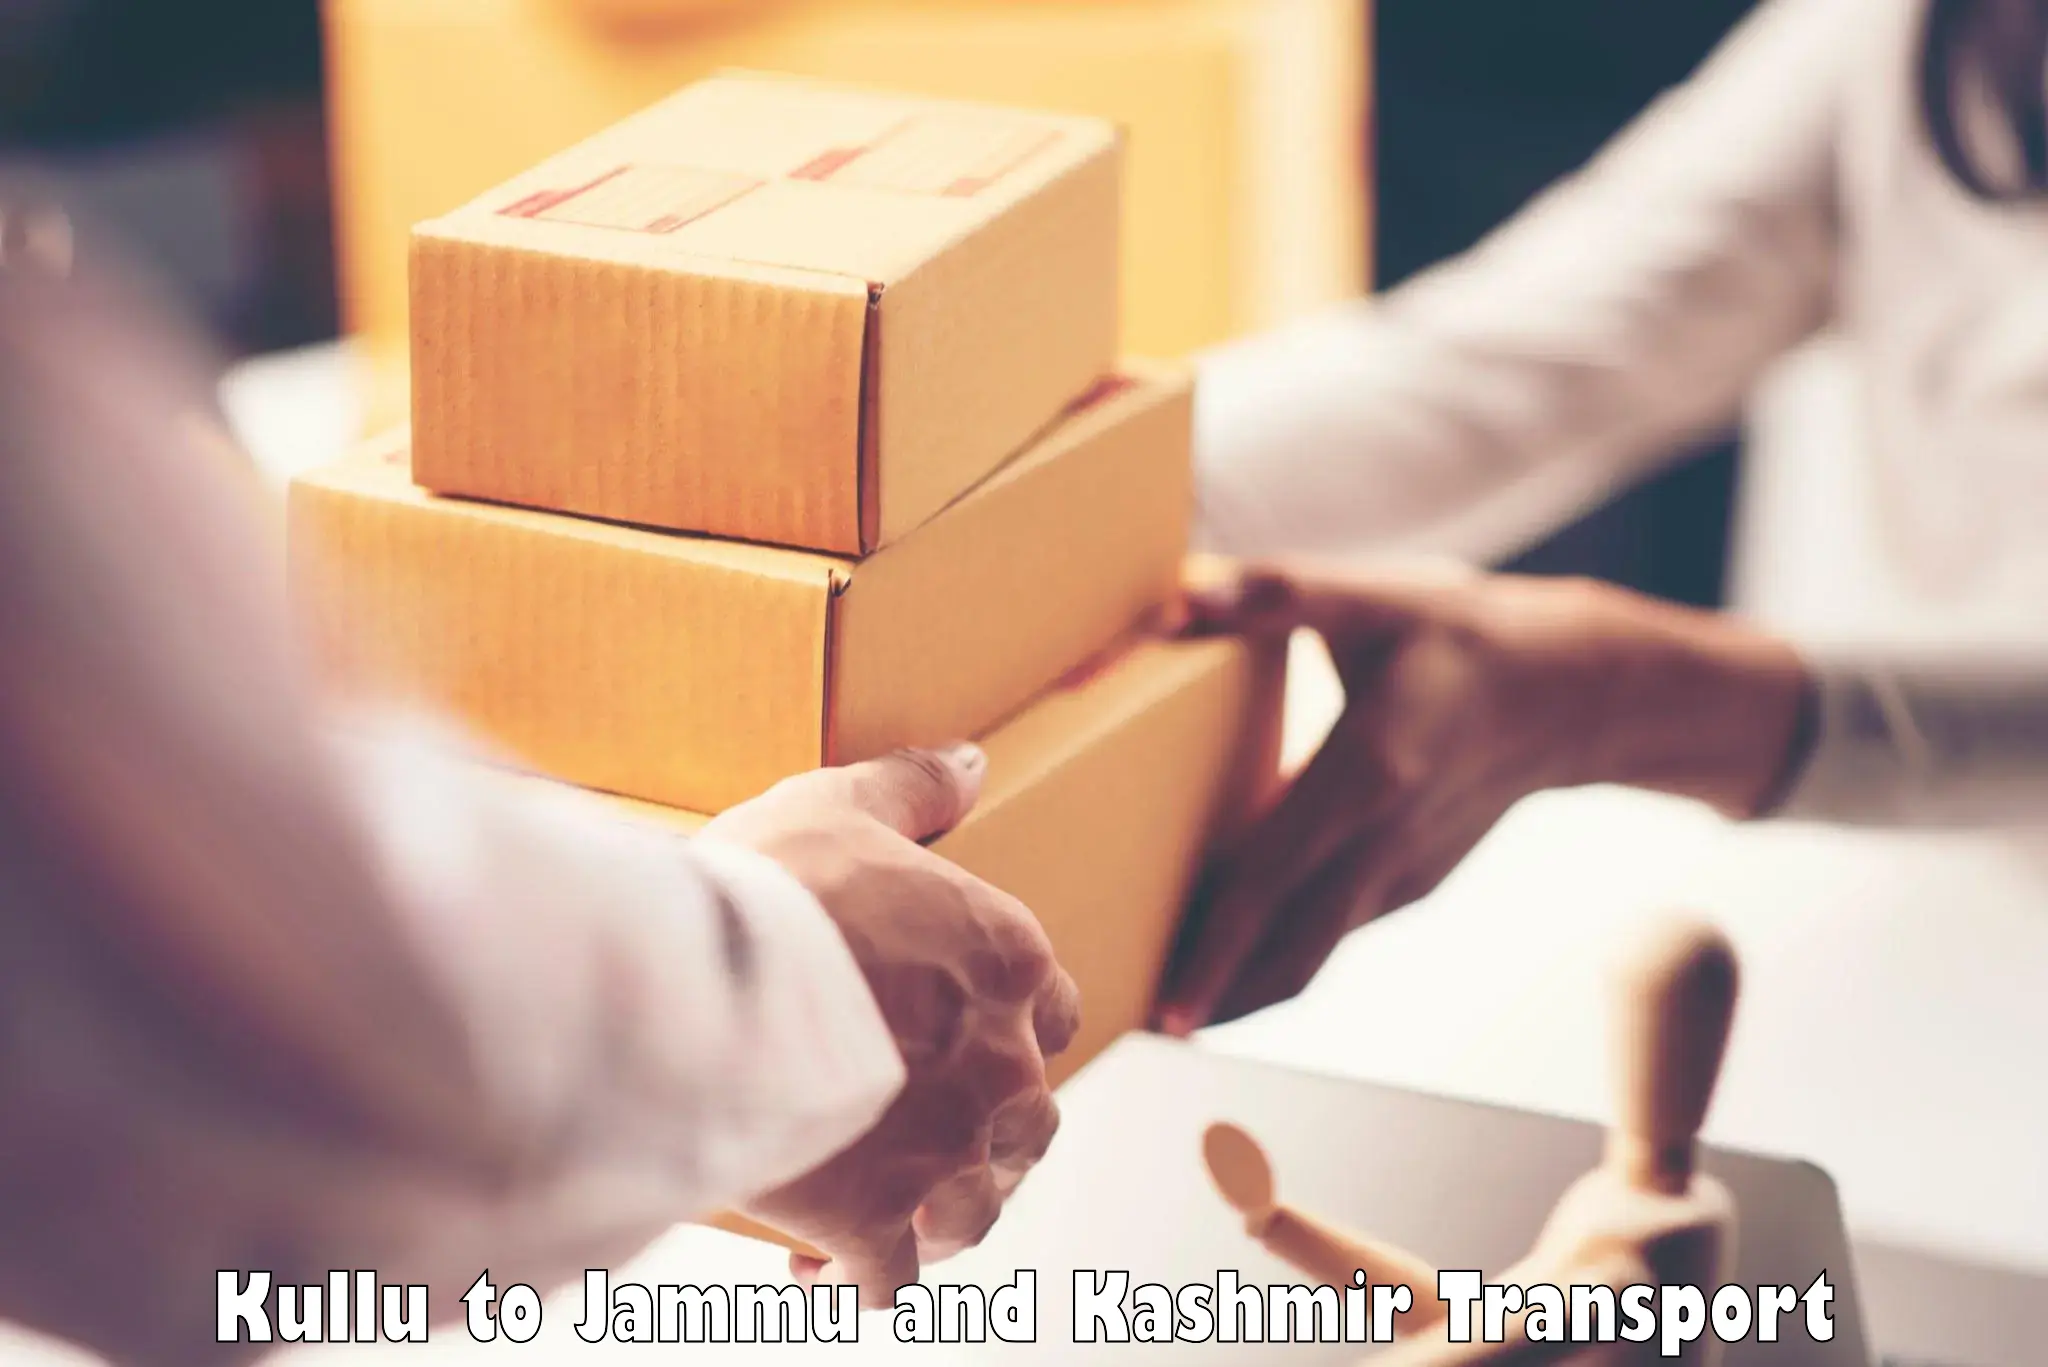 Daily parcel service transport Kullu to Ramban